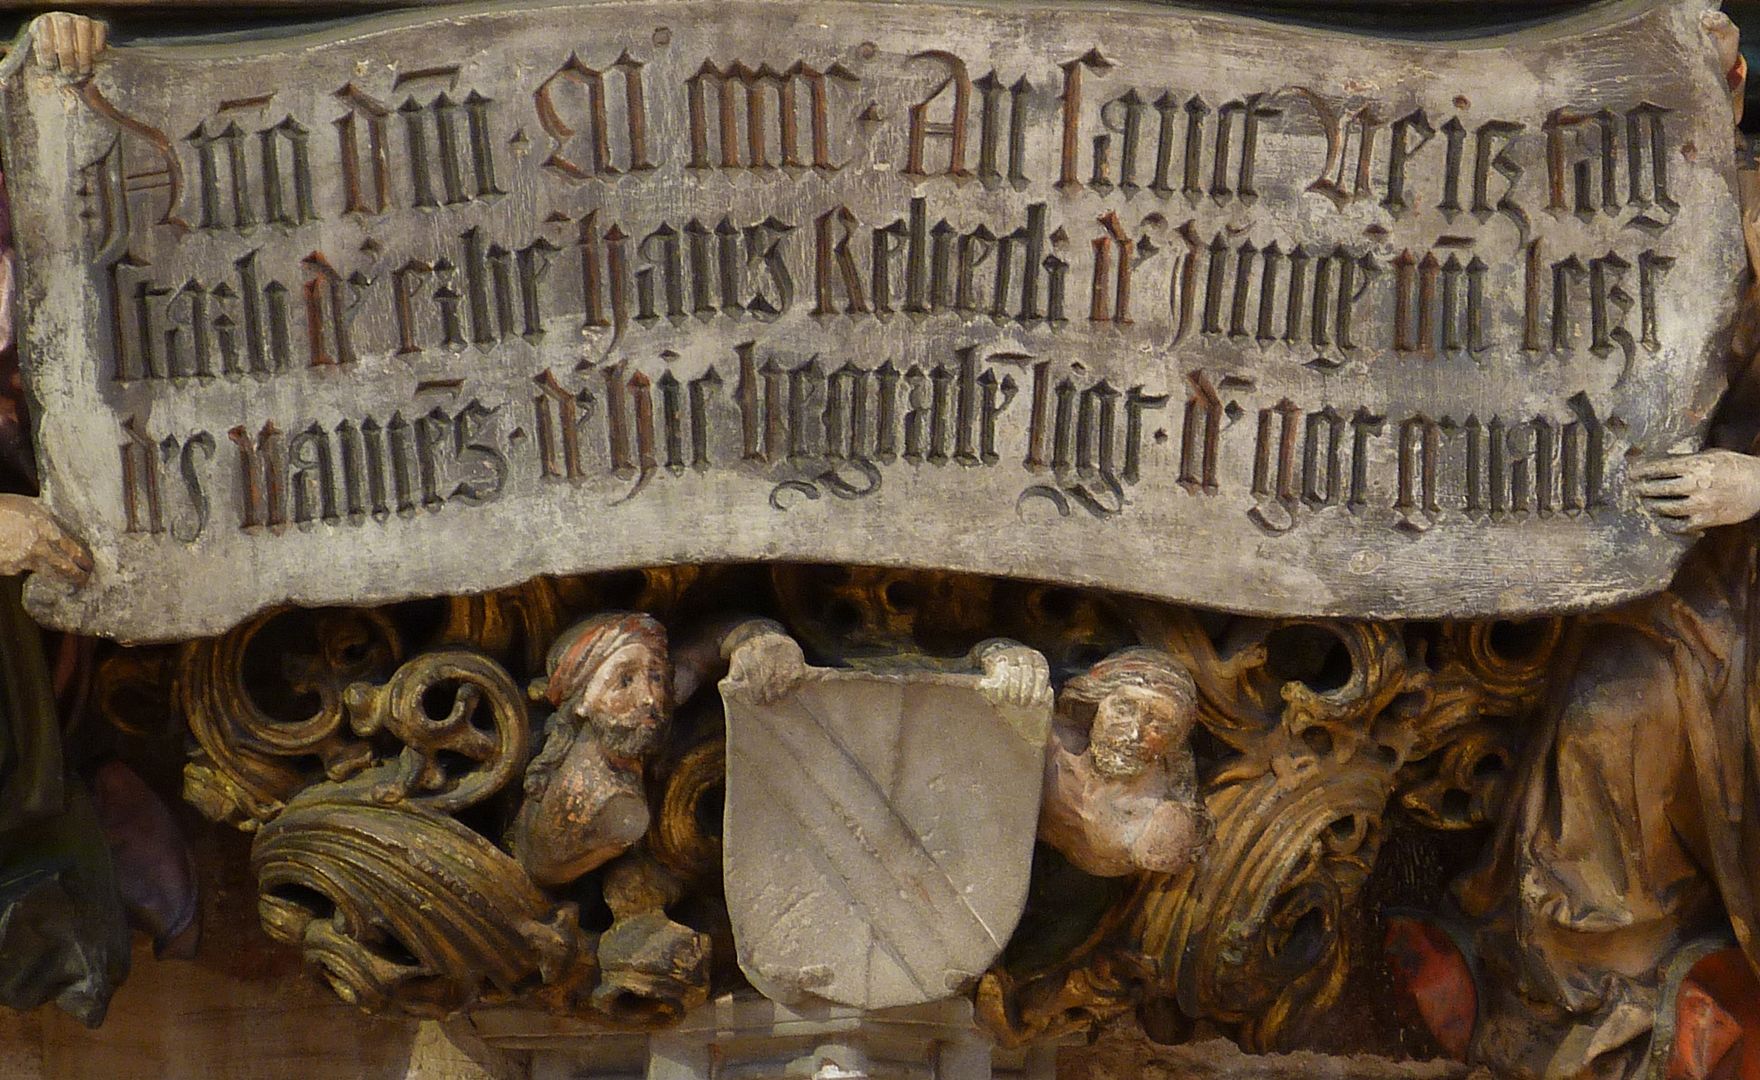 Epitaph of Hans Rebeck Inschrift, darunter zwei Wappenträger mit Wappen